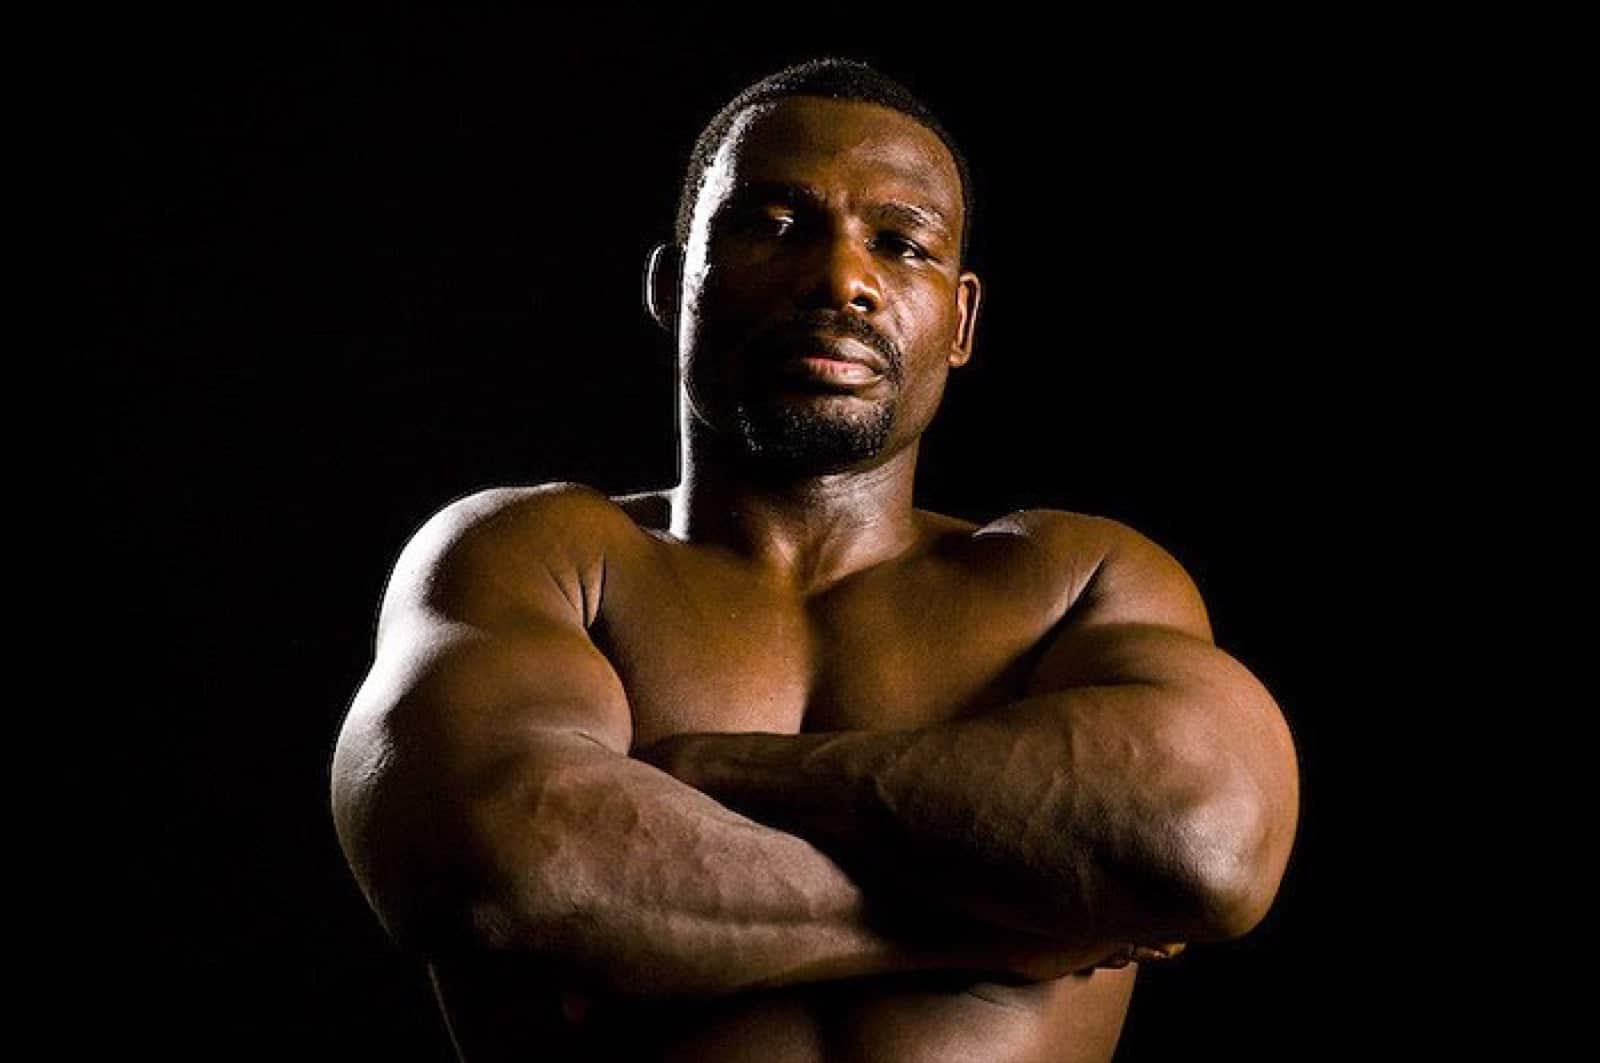 Lennox Lewis boxing image / photo